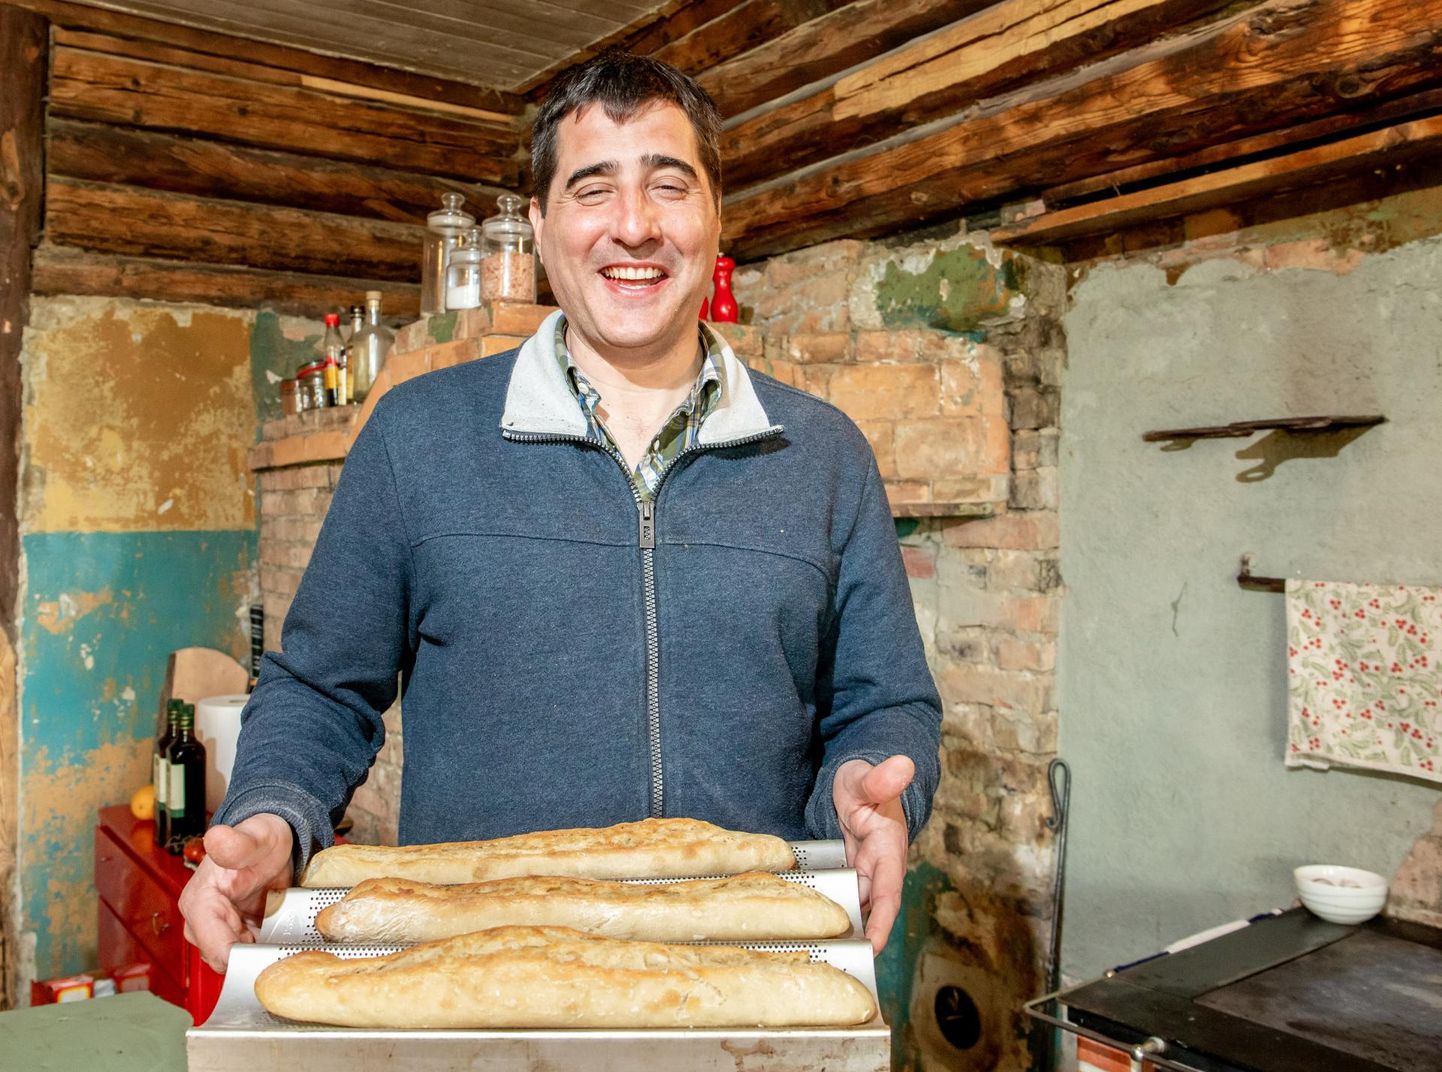 “Mulle meeldib süüa teha ja küpsetada, need on katalooniapäraselt küpsetatud pikad saiad,” näitab Ferran Solé i Prats oma koduses köögis ahjust võetud lõhnavat plaaditäit.